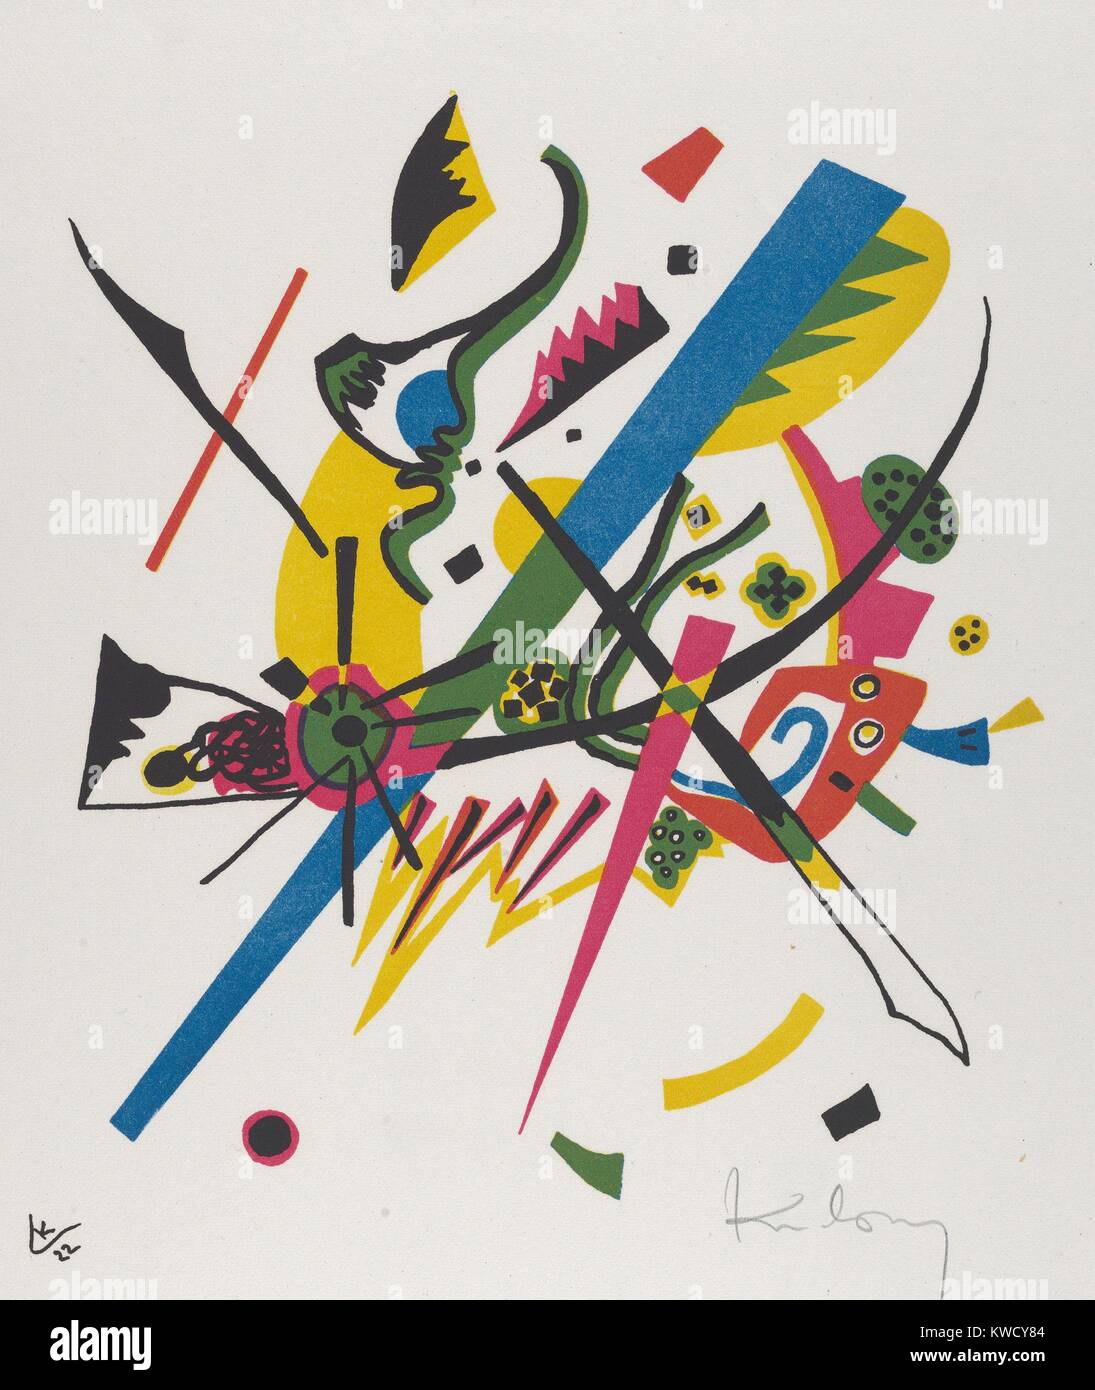 Kleine Welten I (petits mondes I) par Vasily Kandinsky, 1922, expressionniste allemand russe imprimer. Cette lithographie a été inclus dans le portefeuille d'artistes 1922. Chaque impression présente un microcosme autonome d'entité autonome (BSLOC 2017 5 145) Banque D'Images